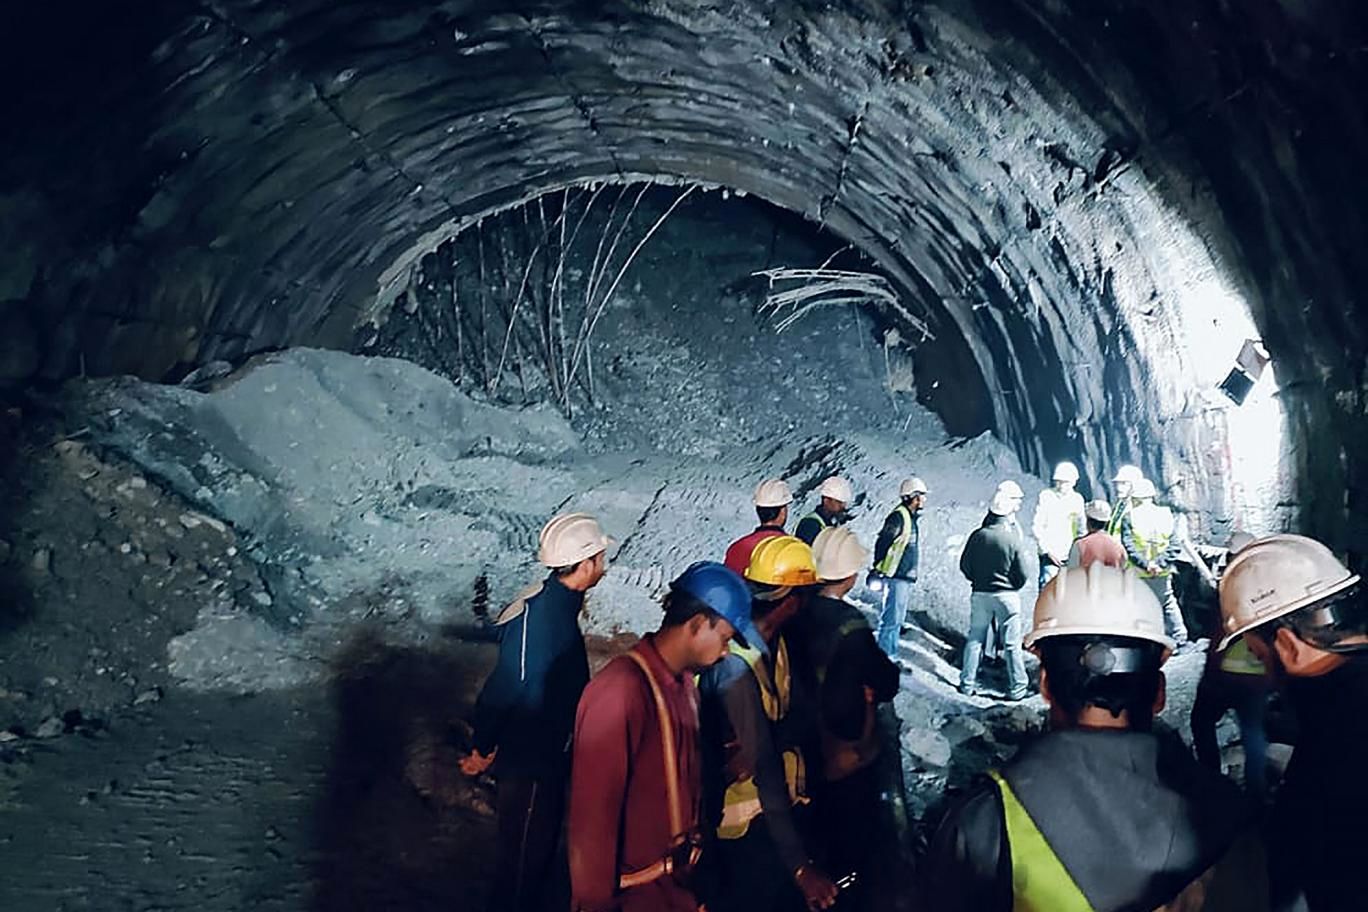 لحظه نجات ۴۱ کارگر هندی در تونل فروریخته+ فیلم